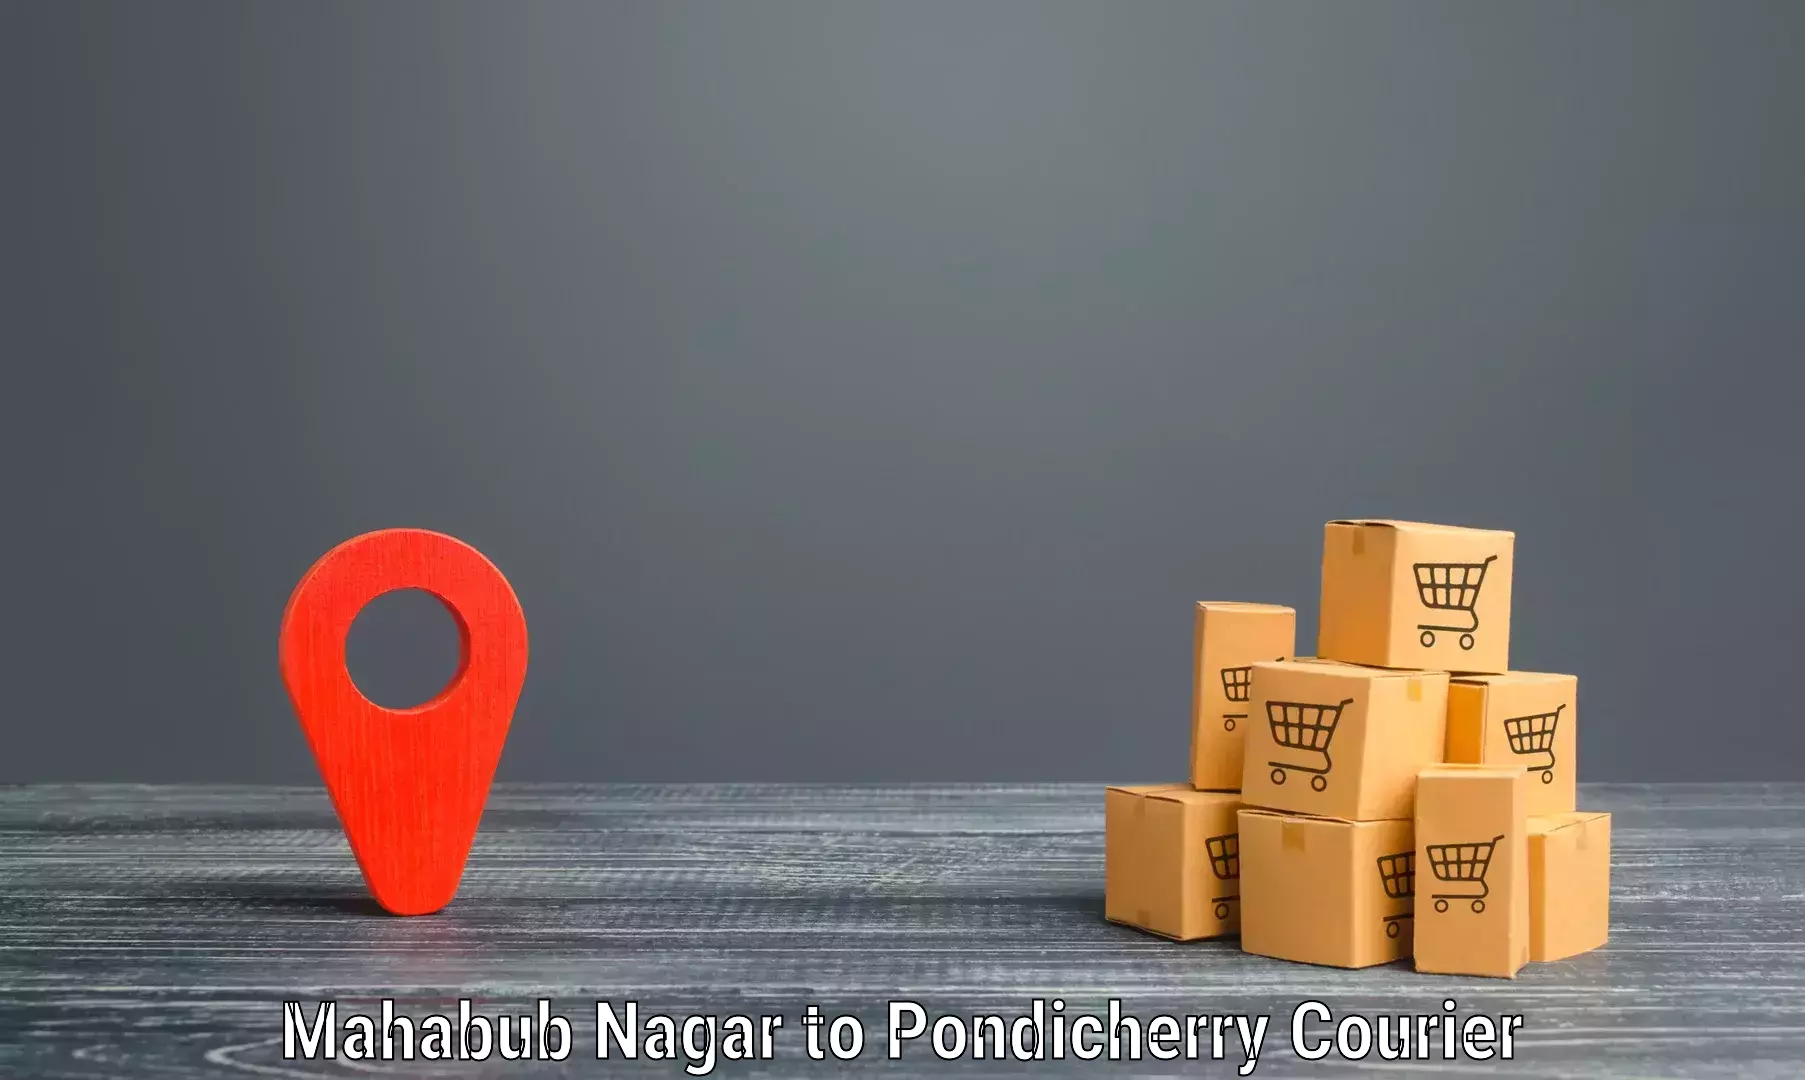 Digital courier platforms Mahabub Nagar to Pondicherry